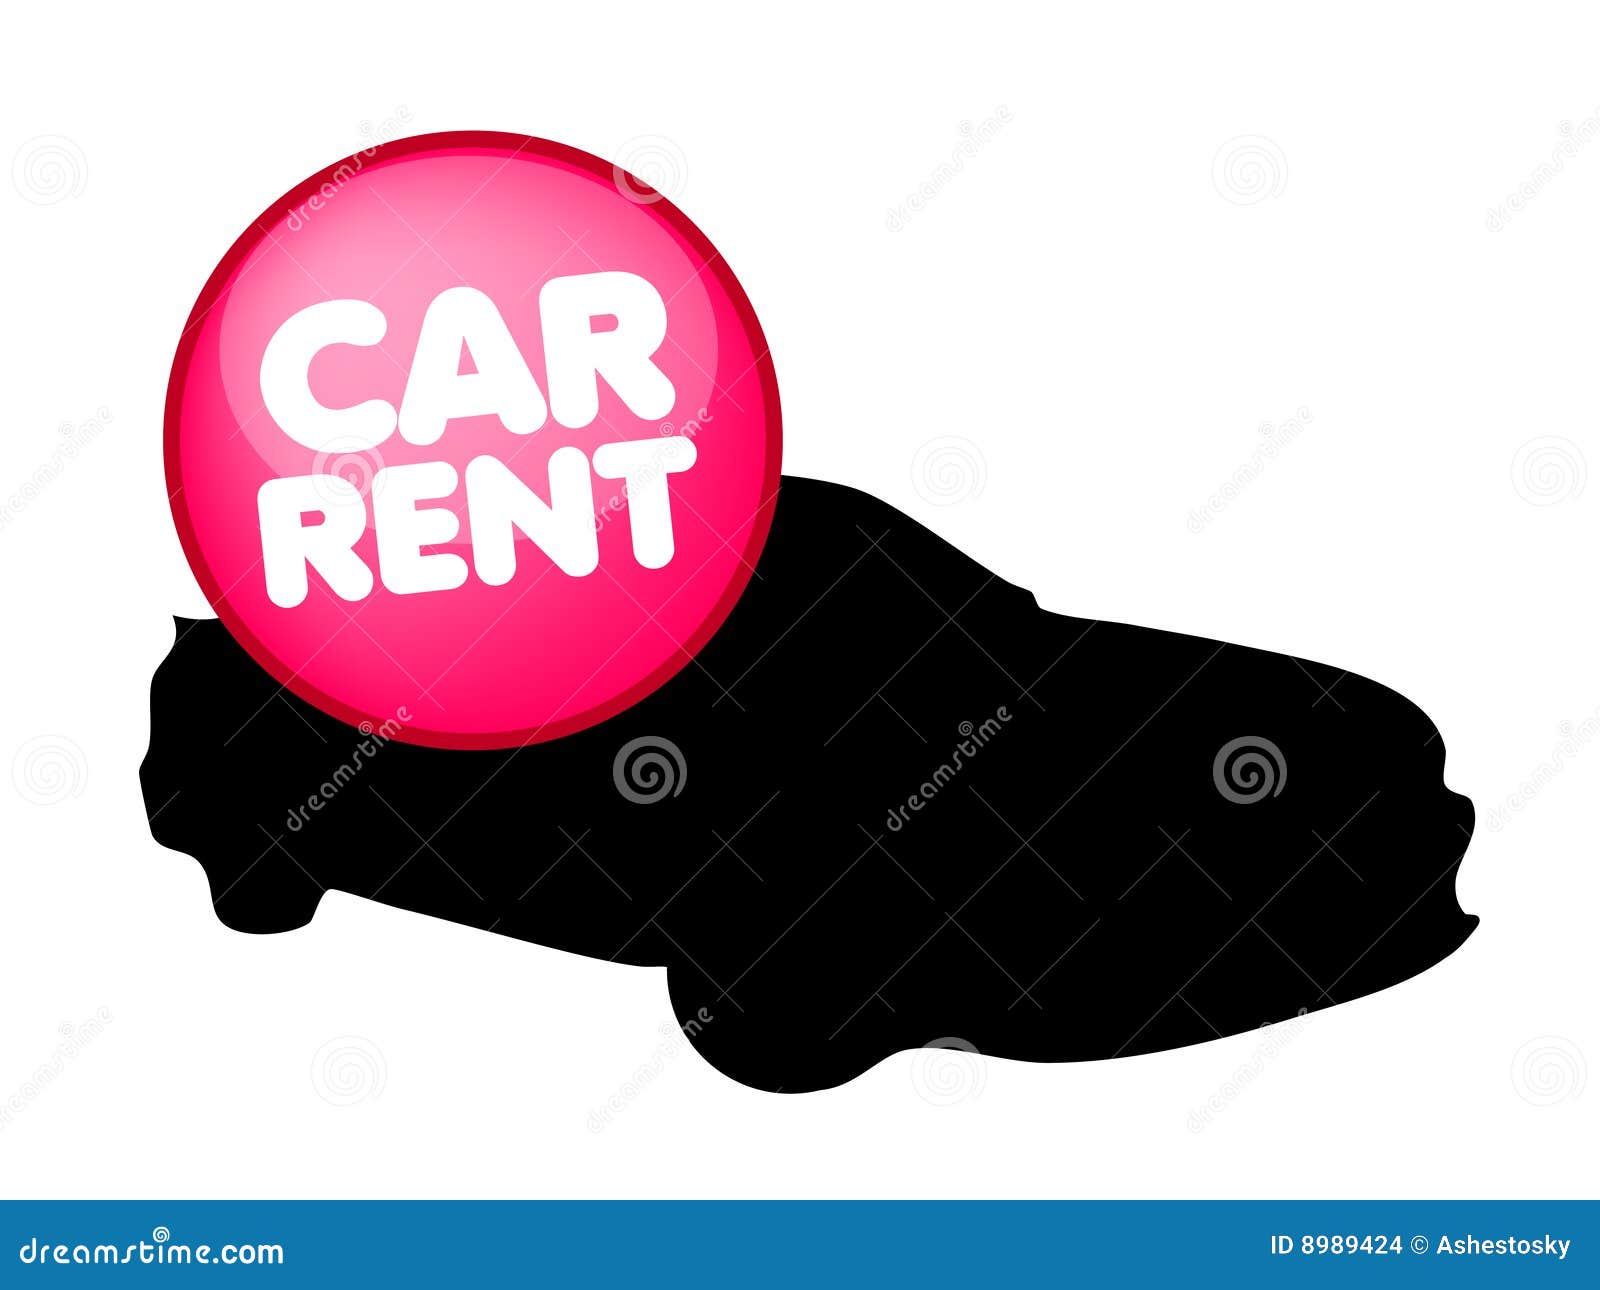 car rental clipart - photo #5